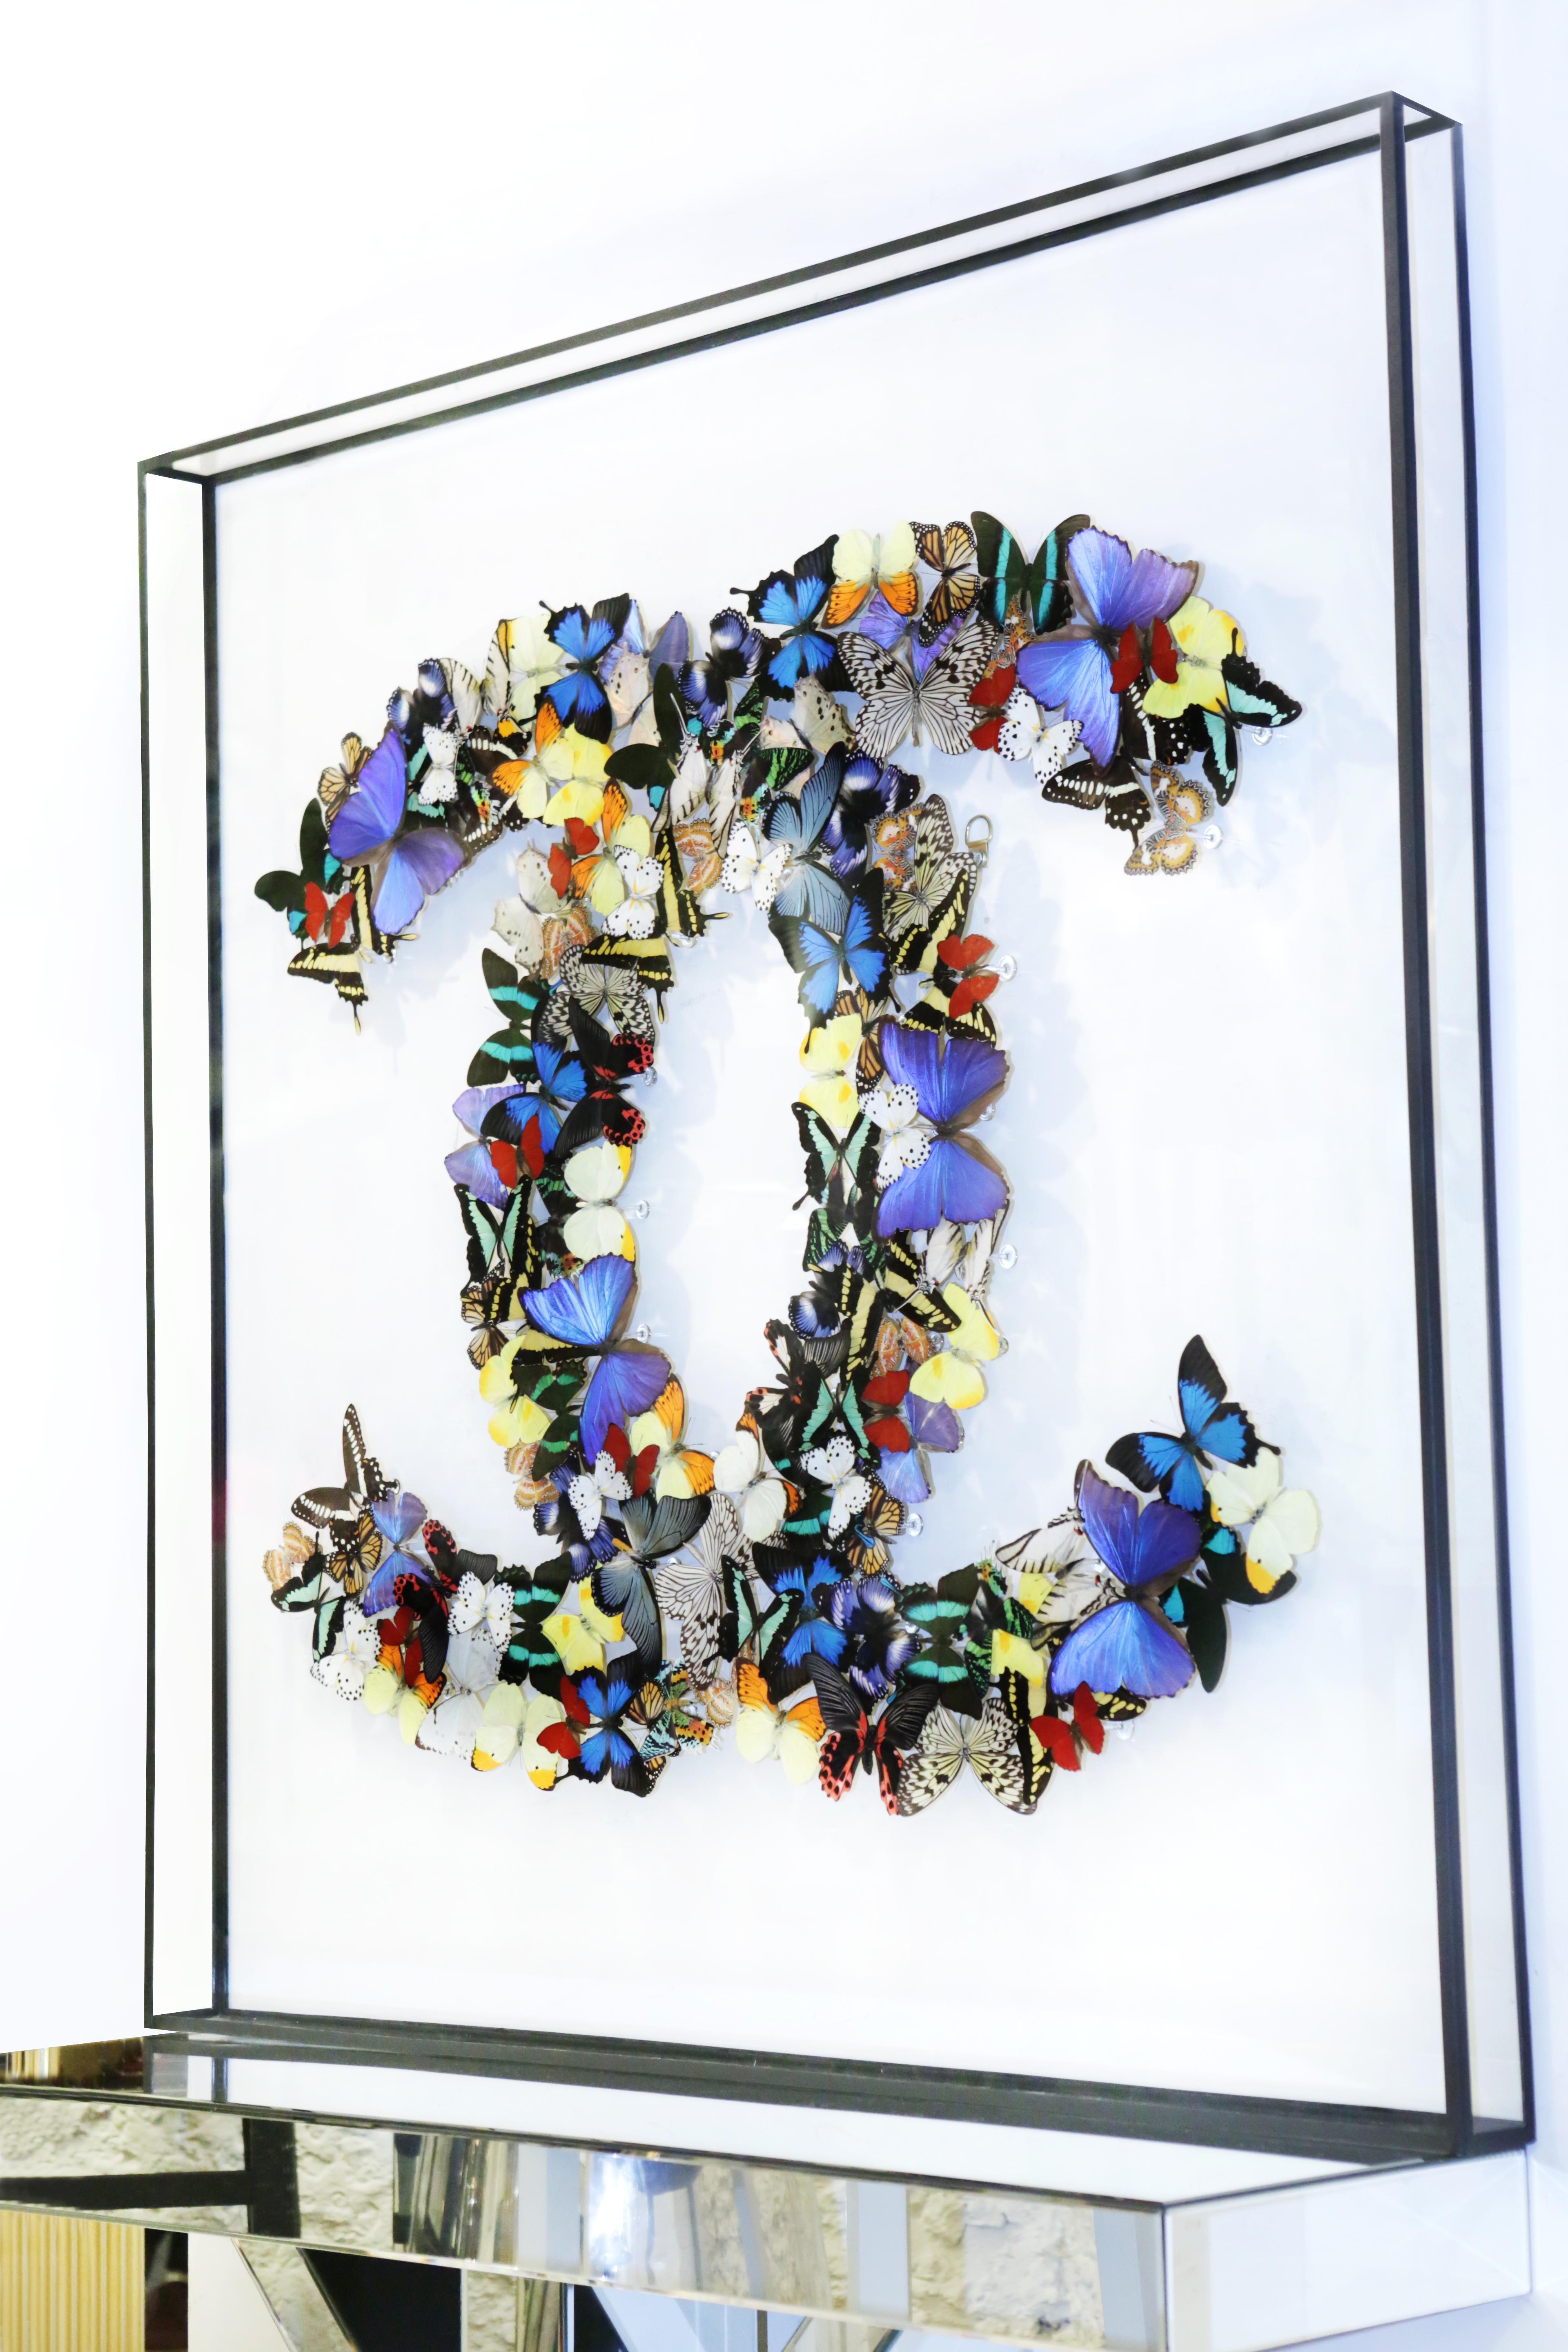 Décoration murale double Chanel papillons sous
cadre de boîte en verre, verre anti-UV, avec de vraies couleurs multicolores
des papillons provenant de fermes d'élevage. Exceptionnel et unique
pièce fabriquée en France par Olivier Violo.